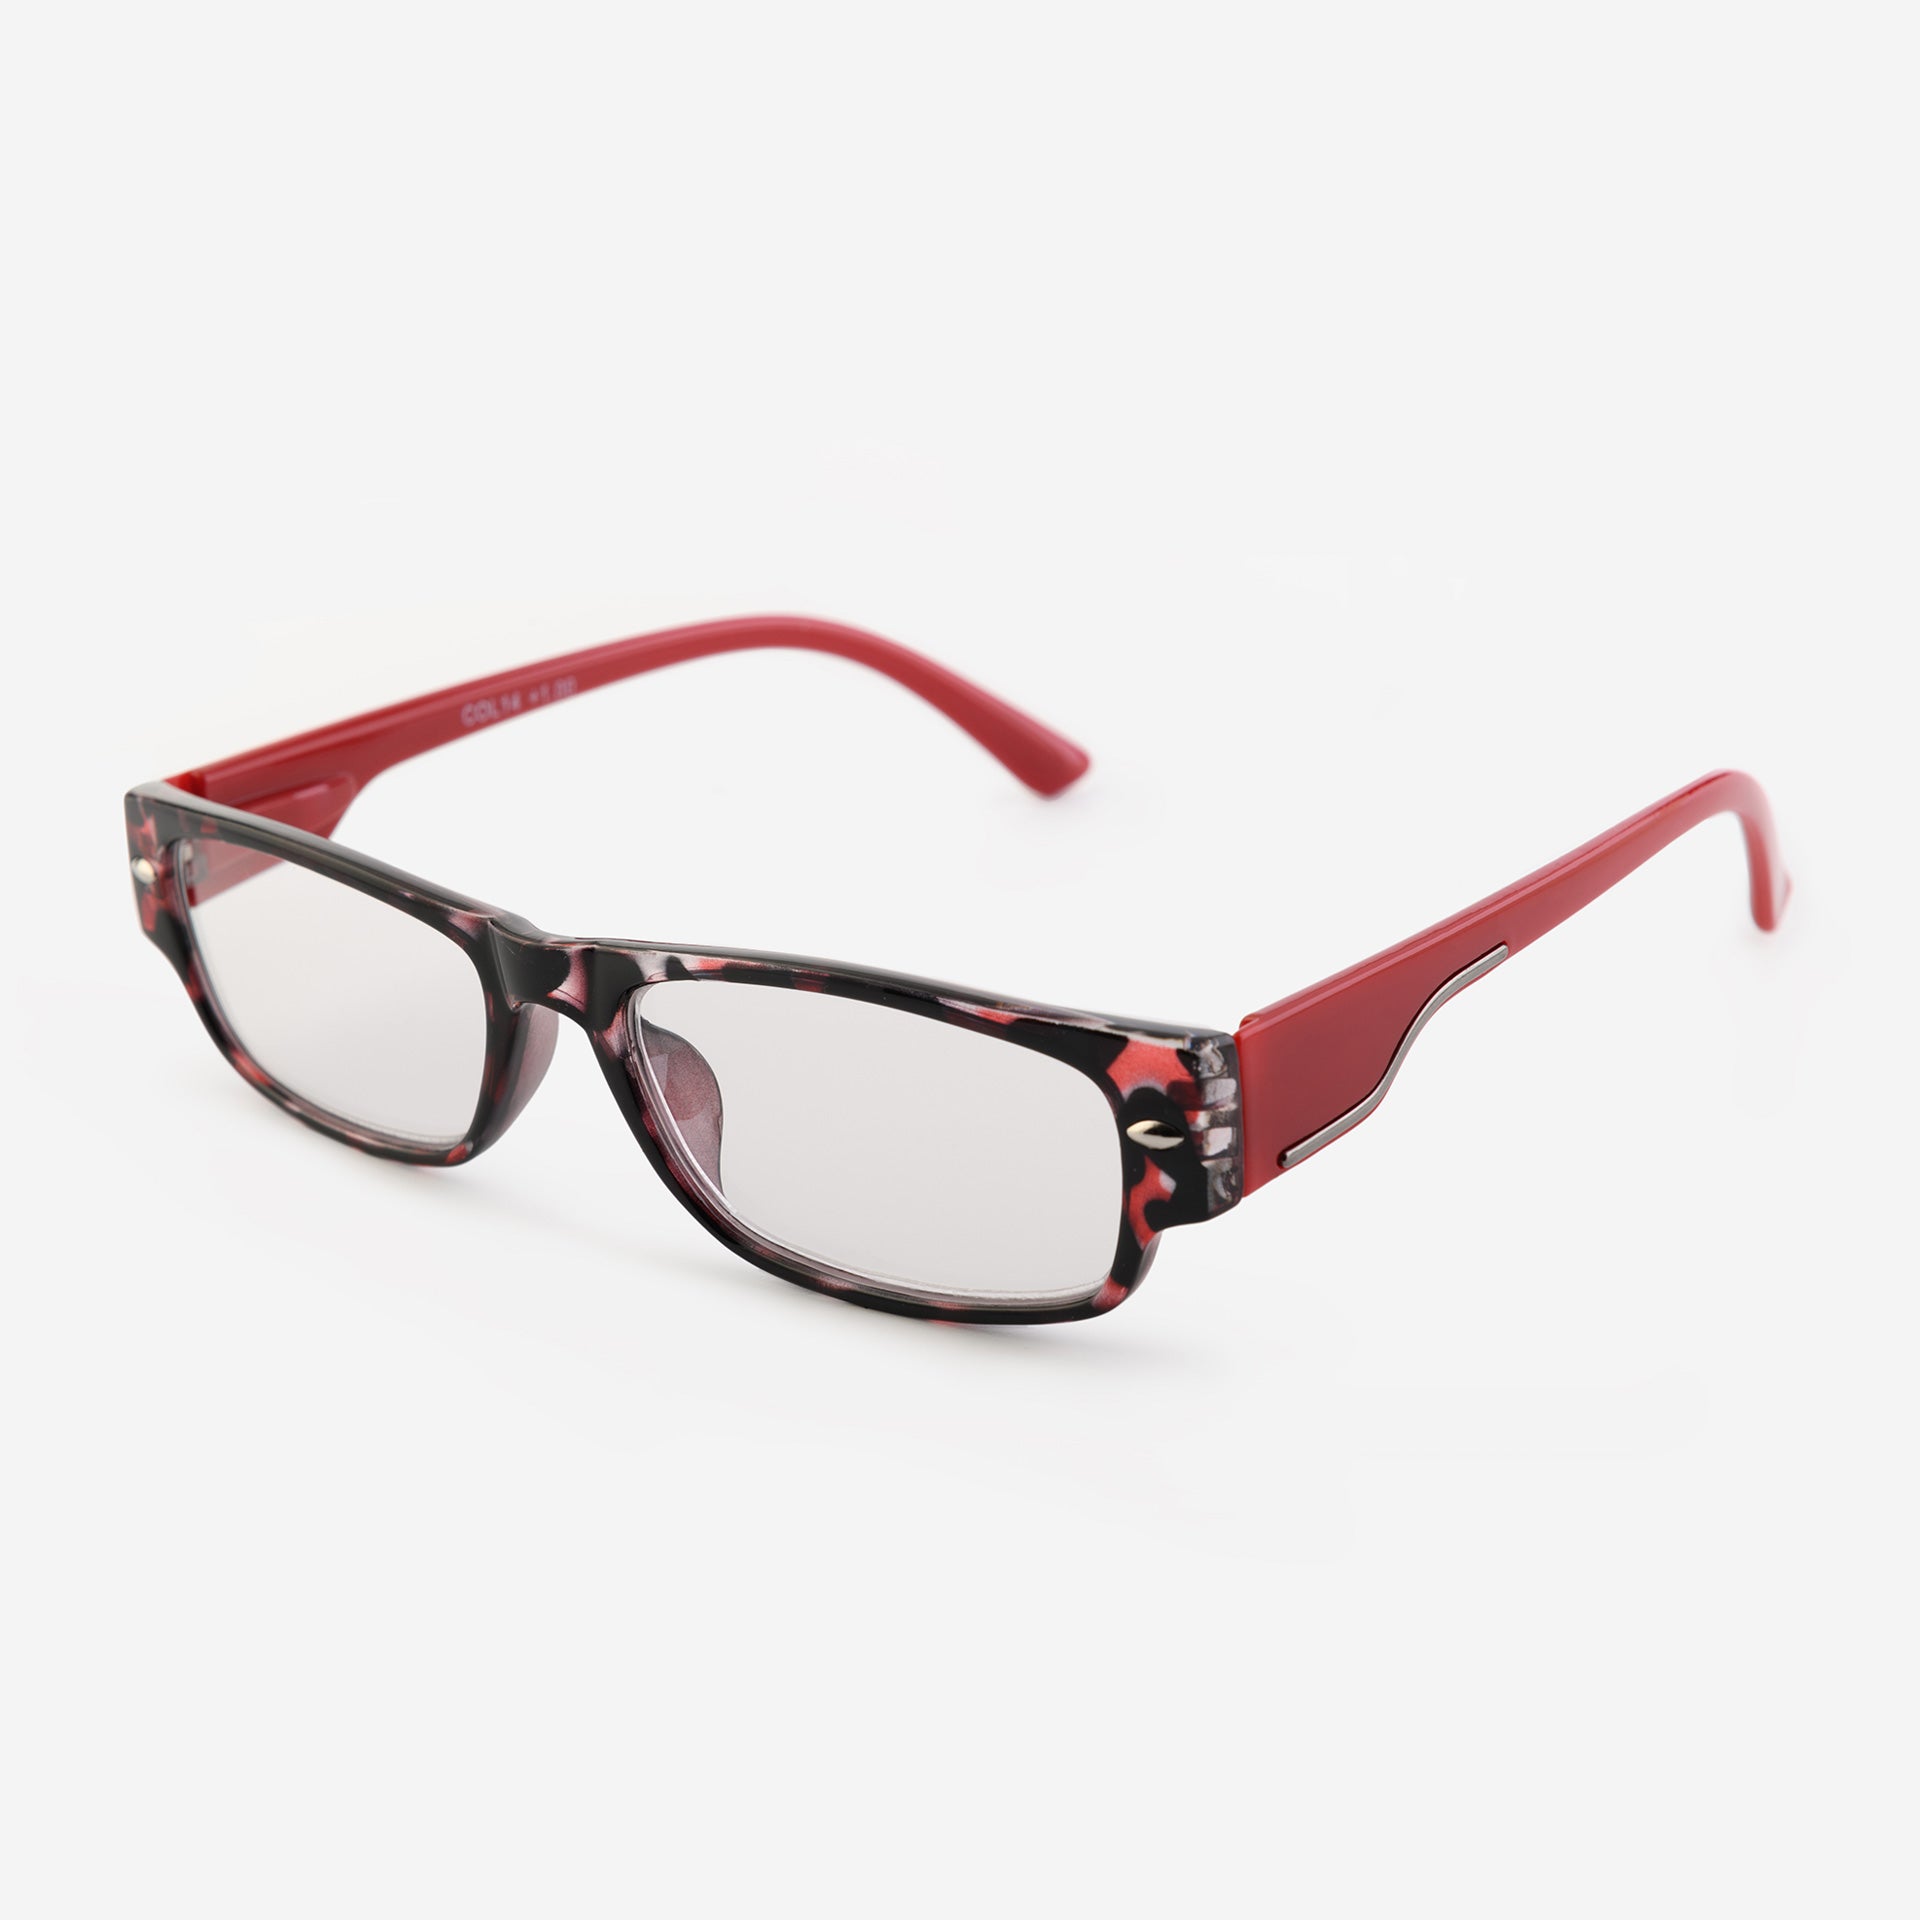 Rectangular reading glasses - red tortoiseshell pattern